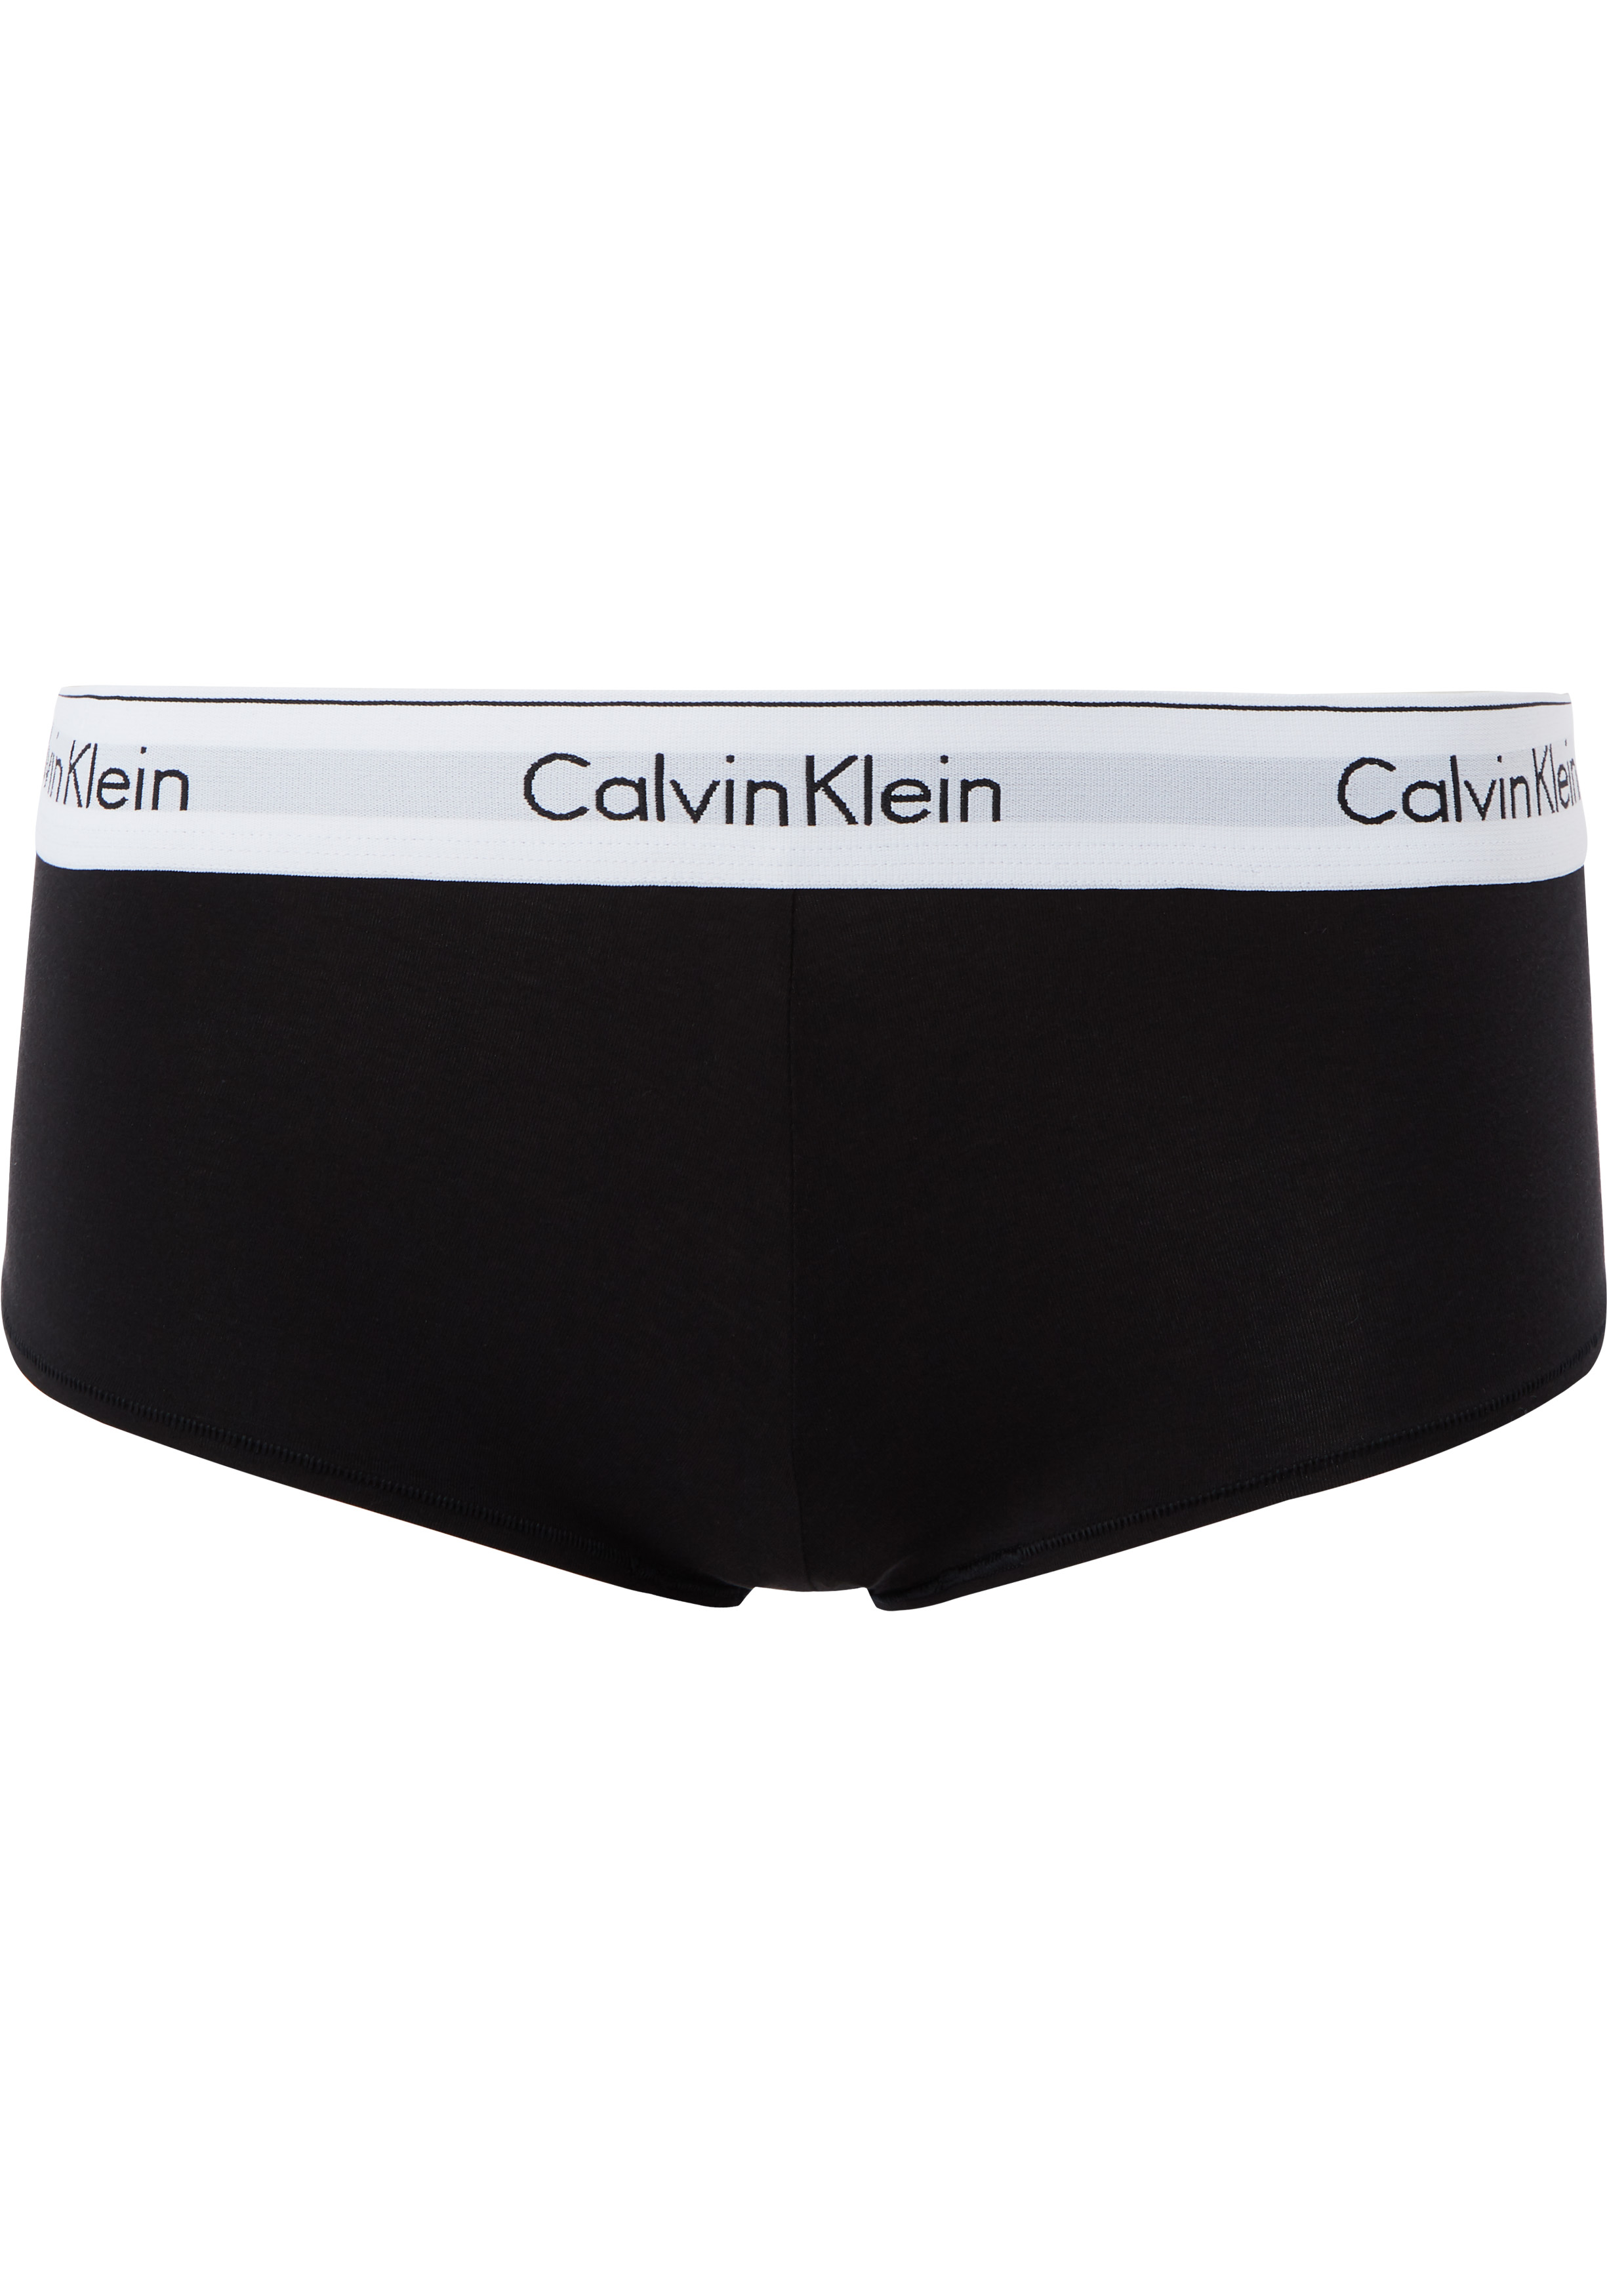 Calvin Klein dames Modern Cotton hipster slip, zwart - DEALS: bestel vele artikelen van topmerken met korting